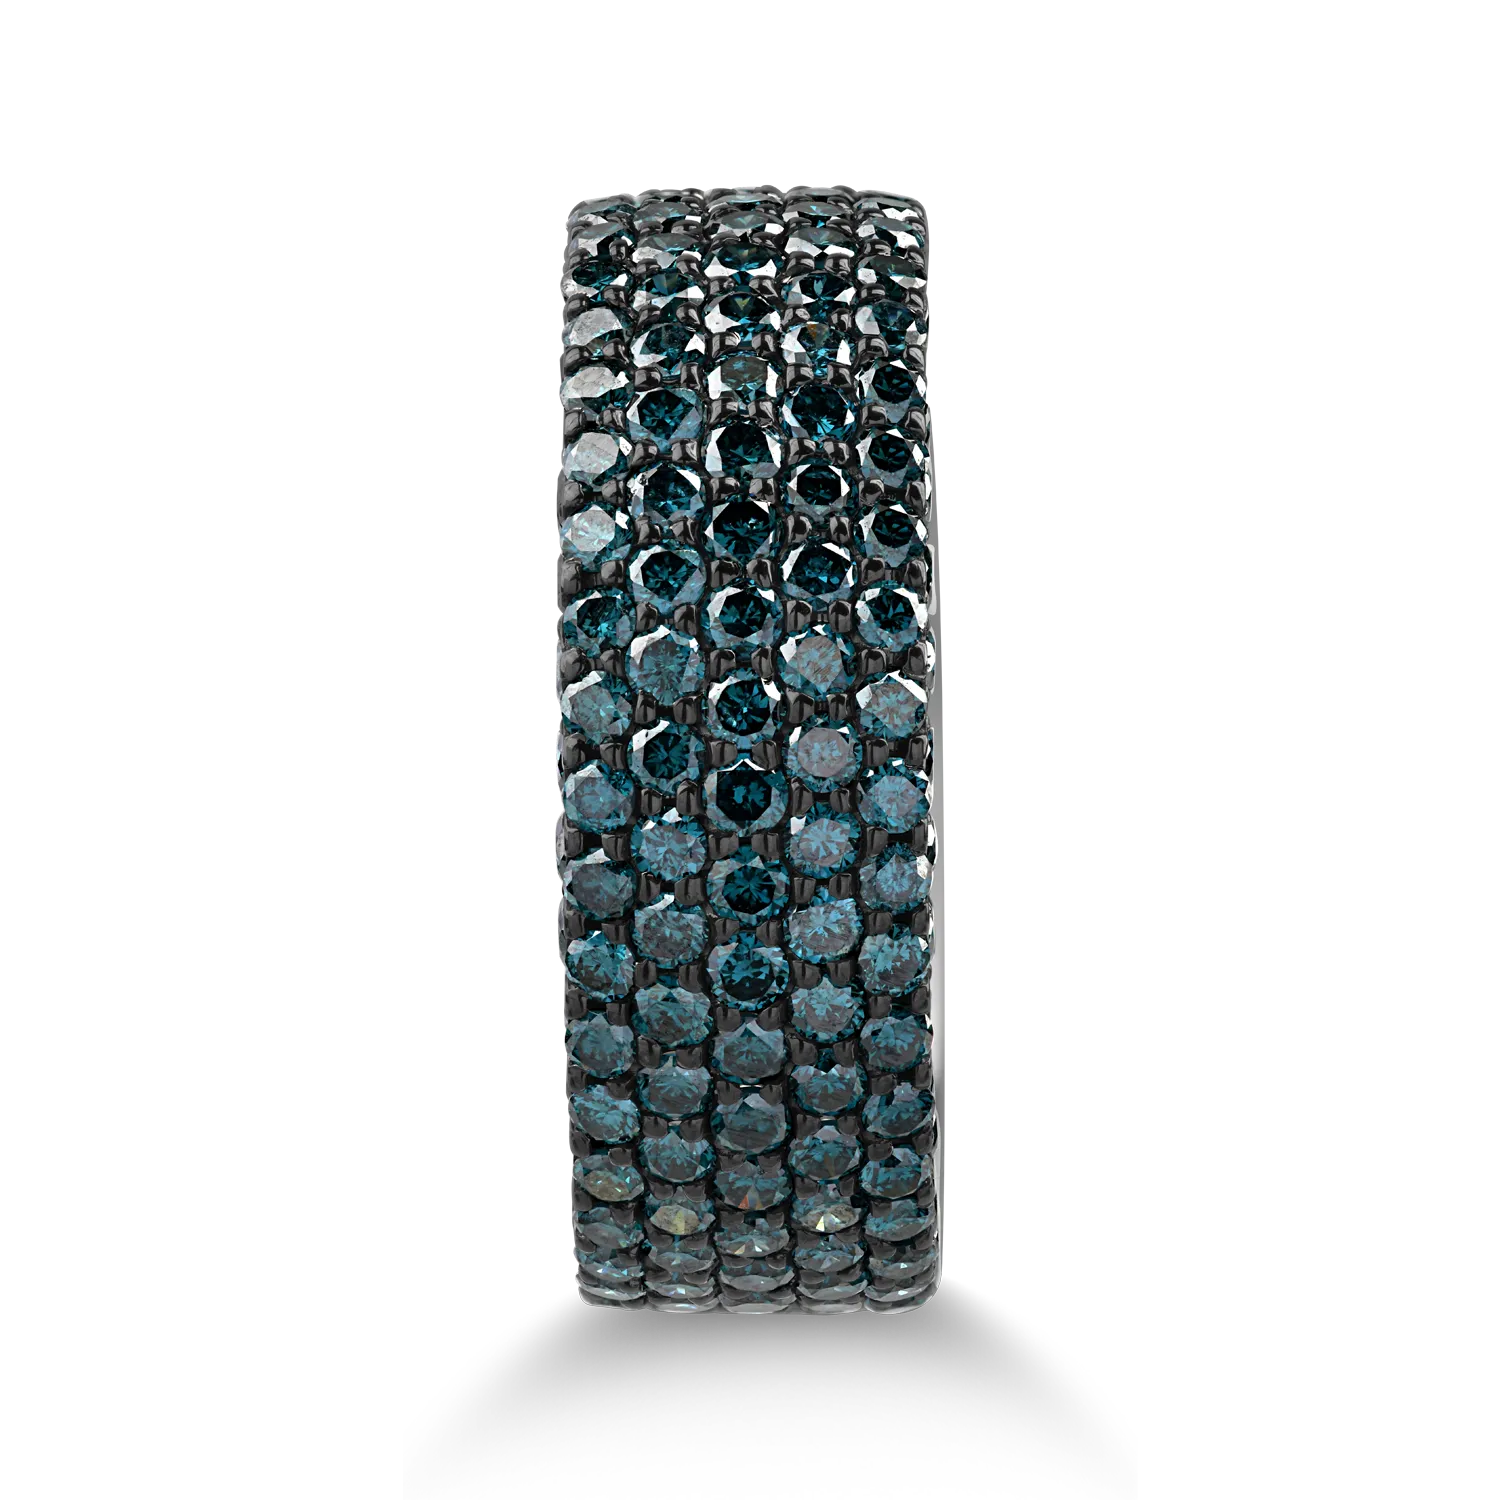 Fehérarany gyűrű 1.95ct kék gyémántokkal